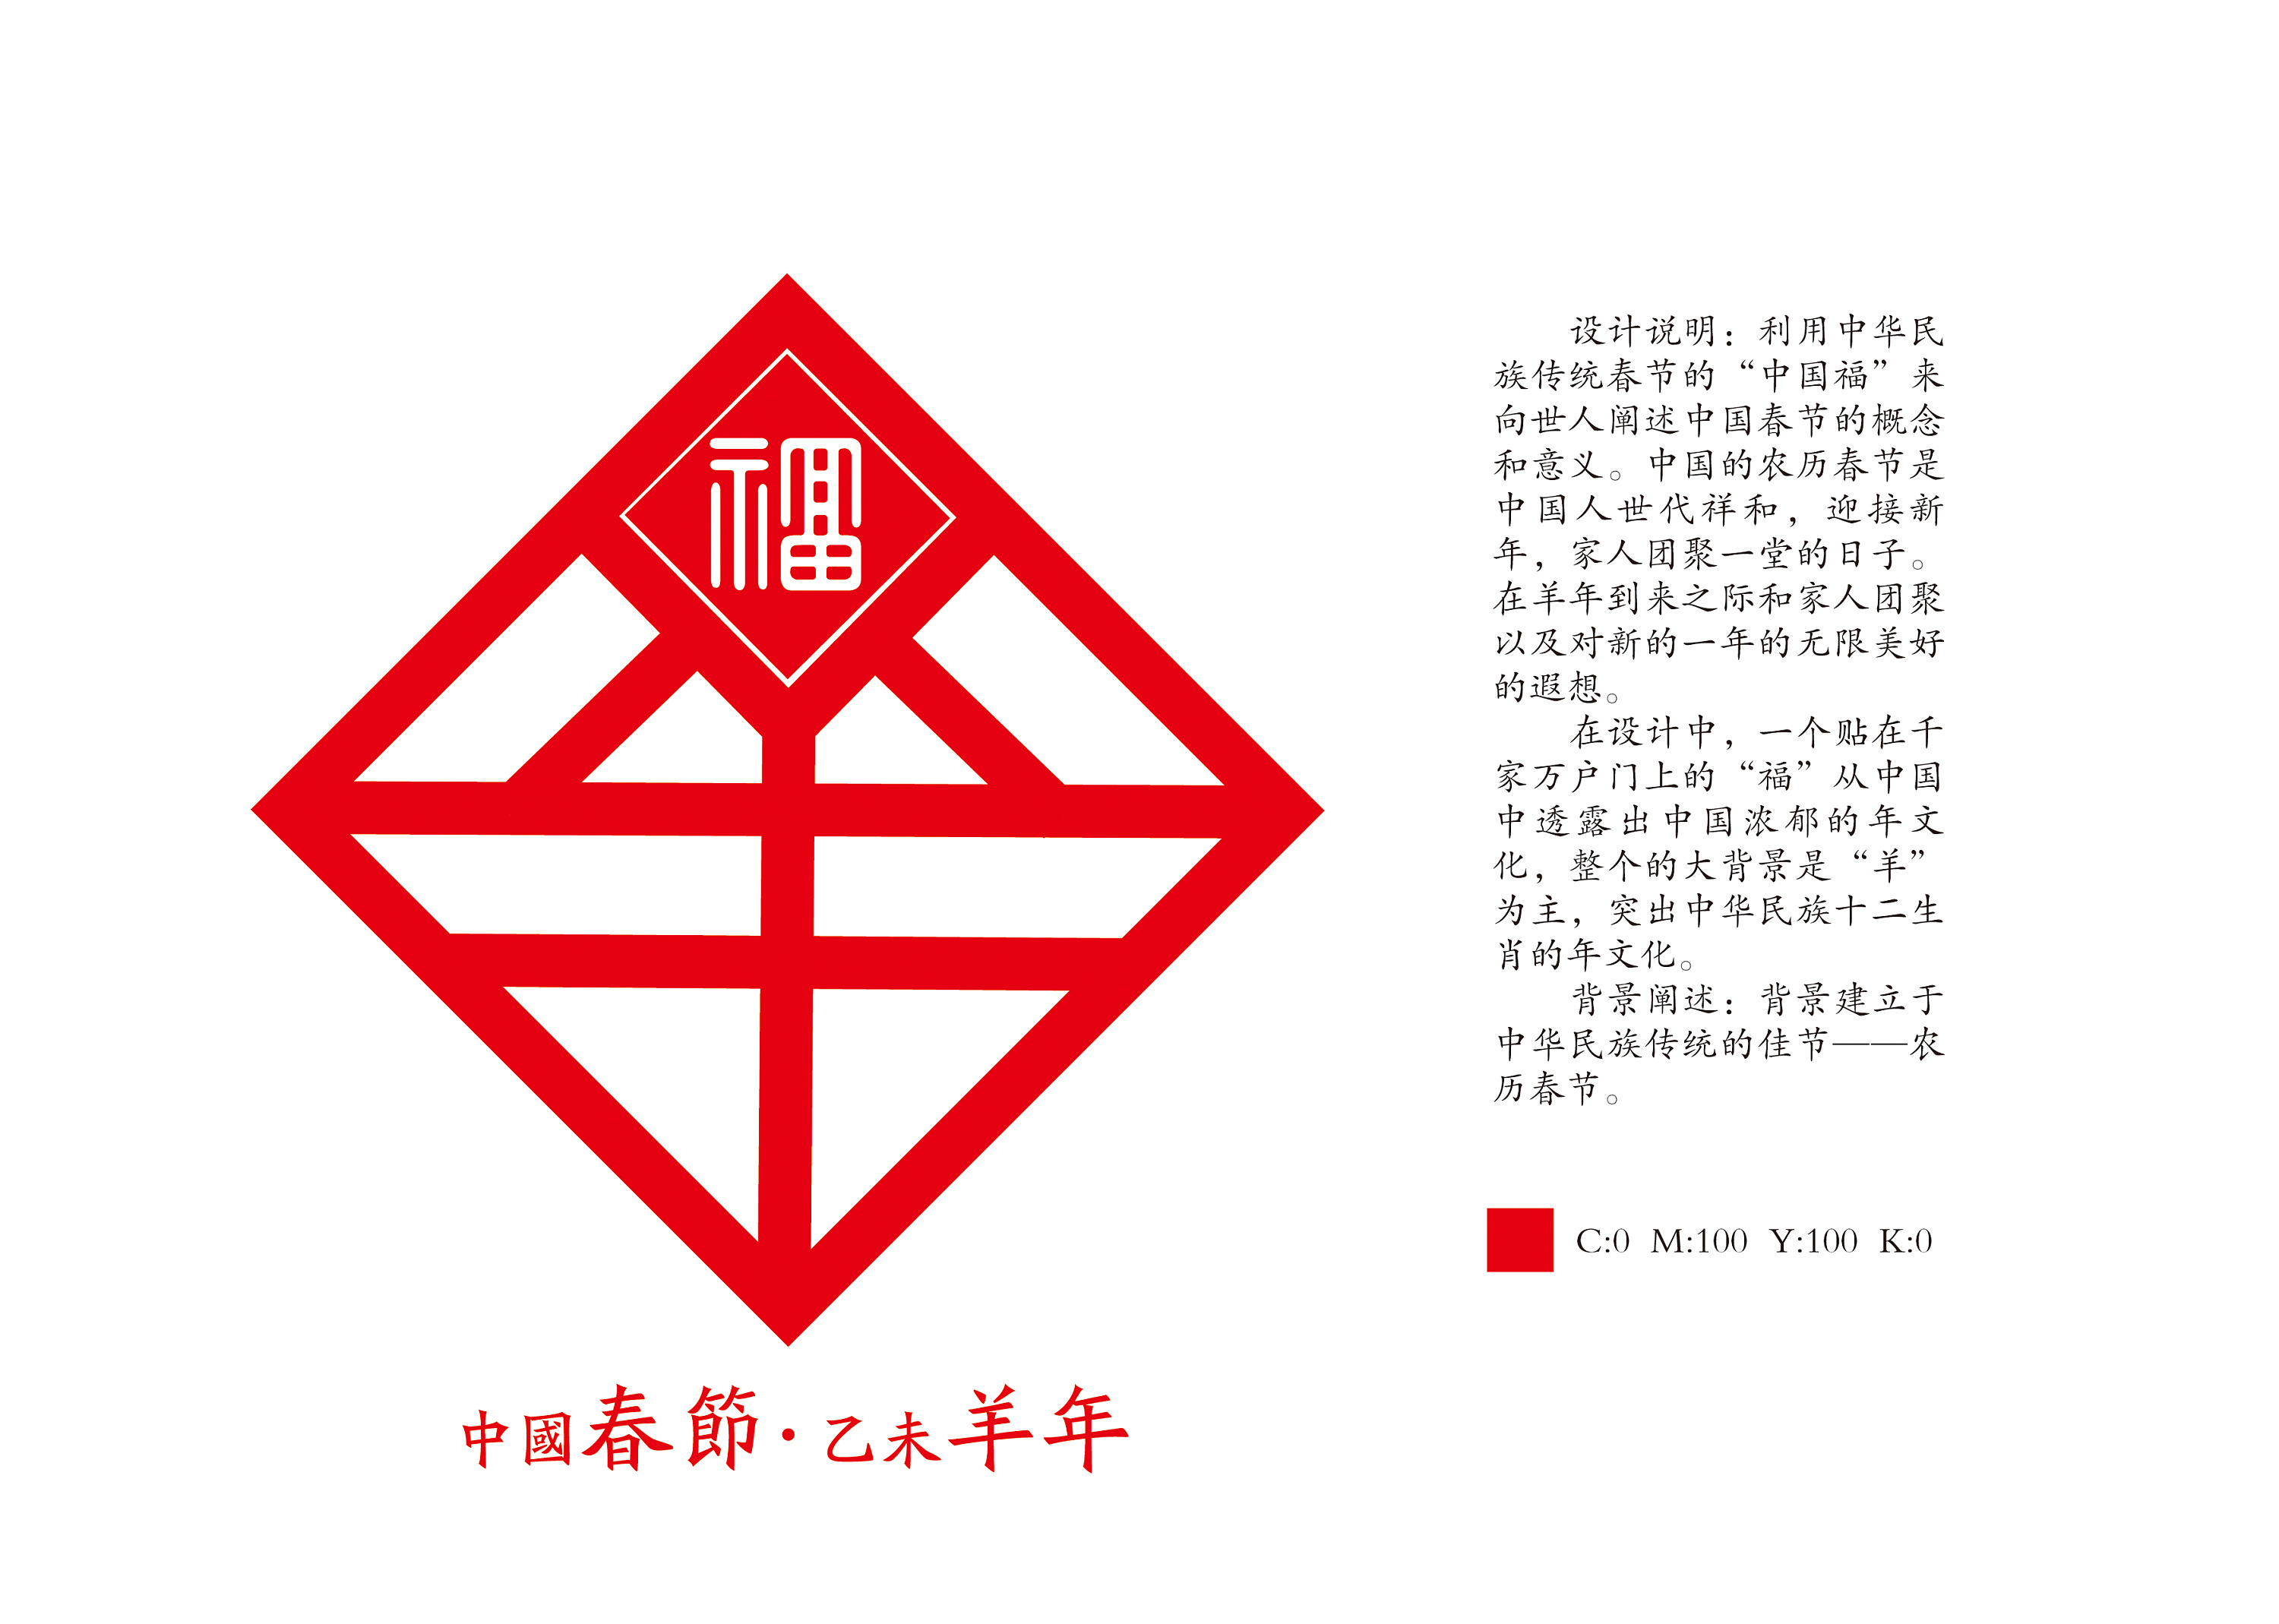 刘祥法中华春节符号图片